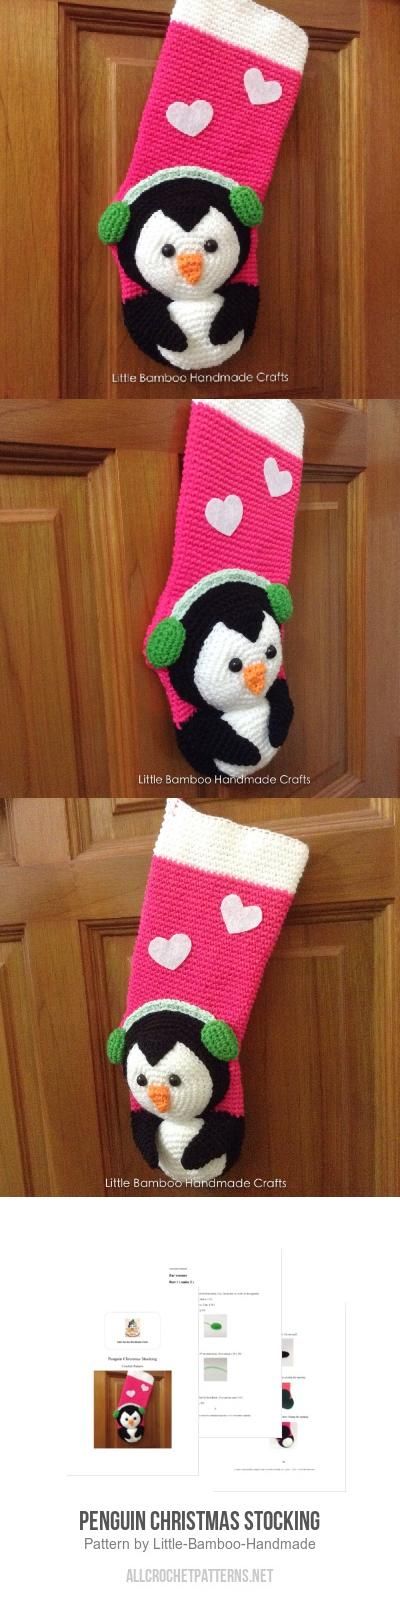 Penguin Christmas Stocking Crochet Pattern for purchase